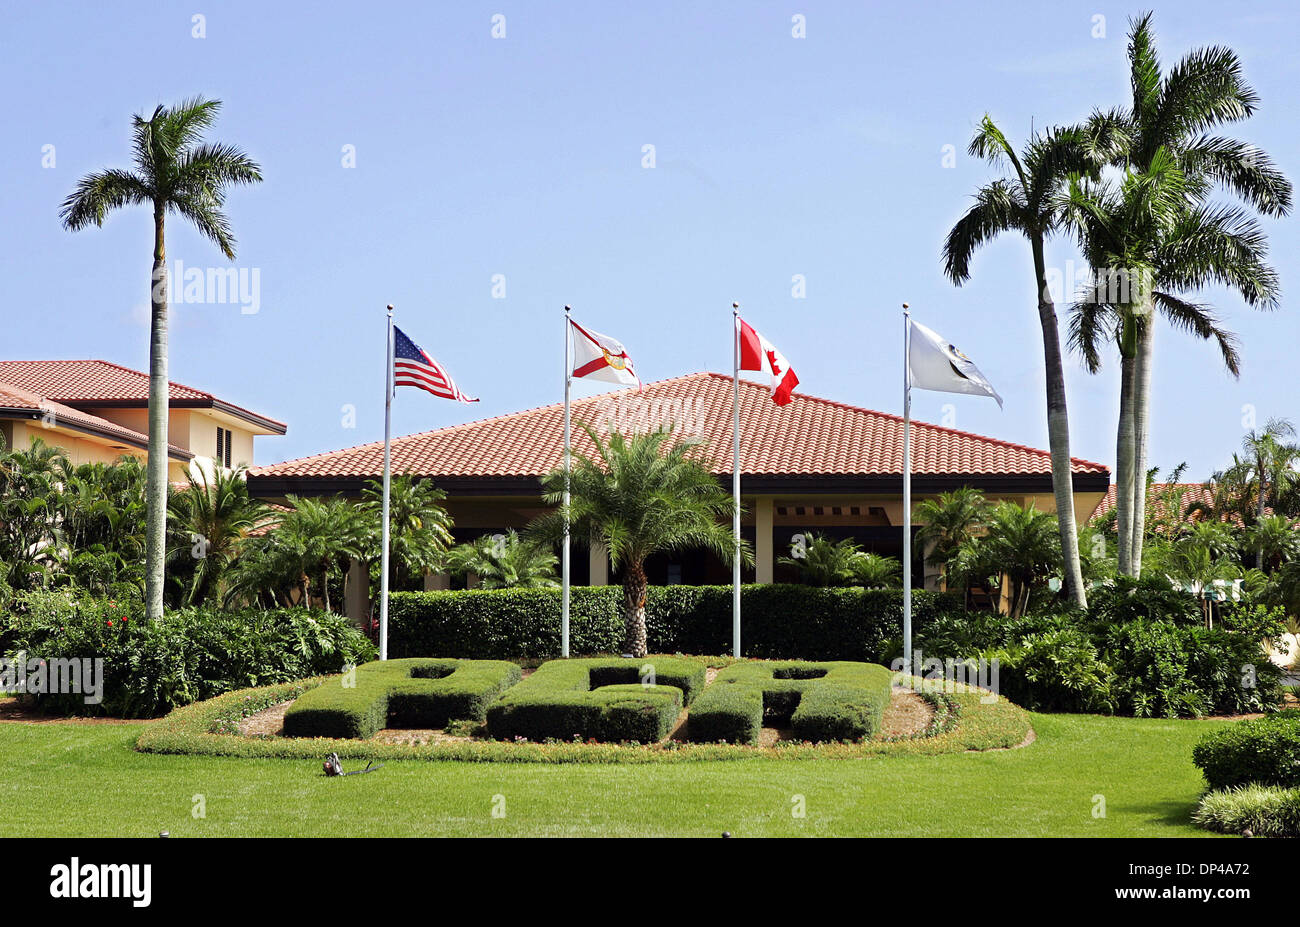 Aug 02, 2006 ; Palm Beach Gardens, FL, USA ; l'entrée du cercle pour PGA National Resort à Palm Beach Gardens. Crédit obligatoire : Photo de Richard Graulich/Palm Beach Post/ZUMA Press. (©) Copyright 2006 par Palm Beach Post Banque D'Images